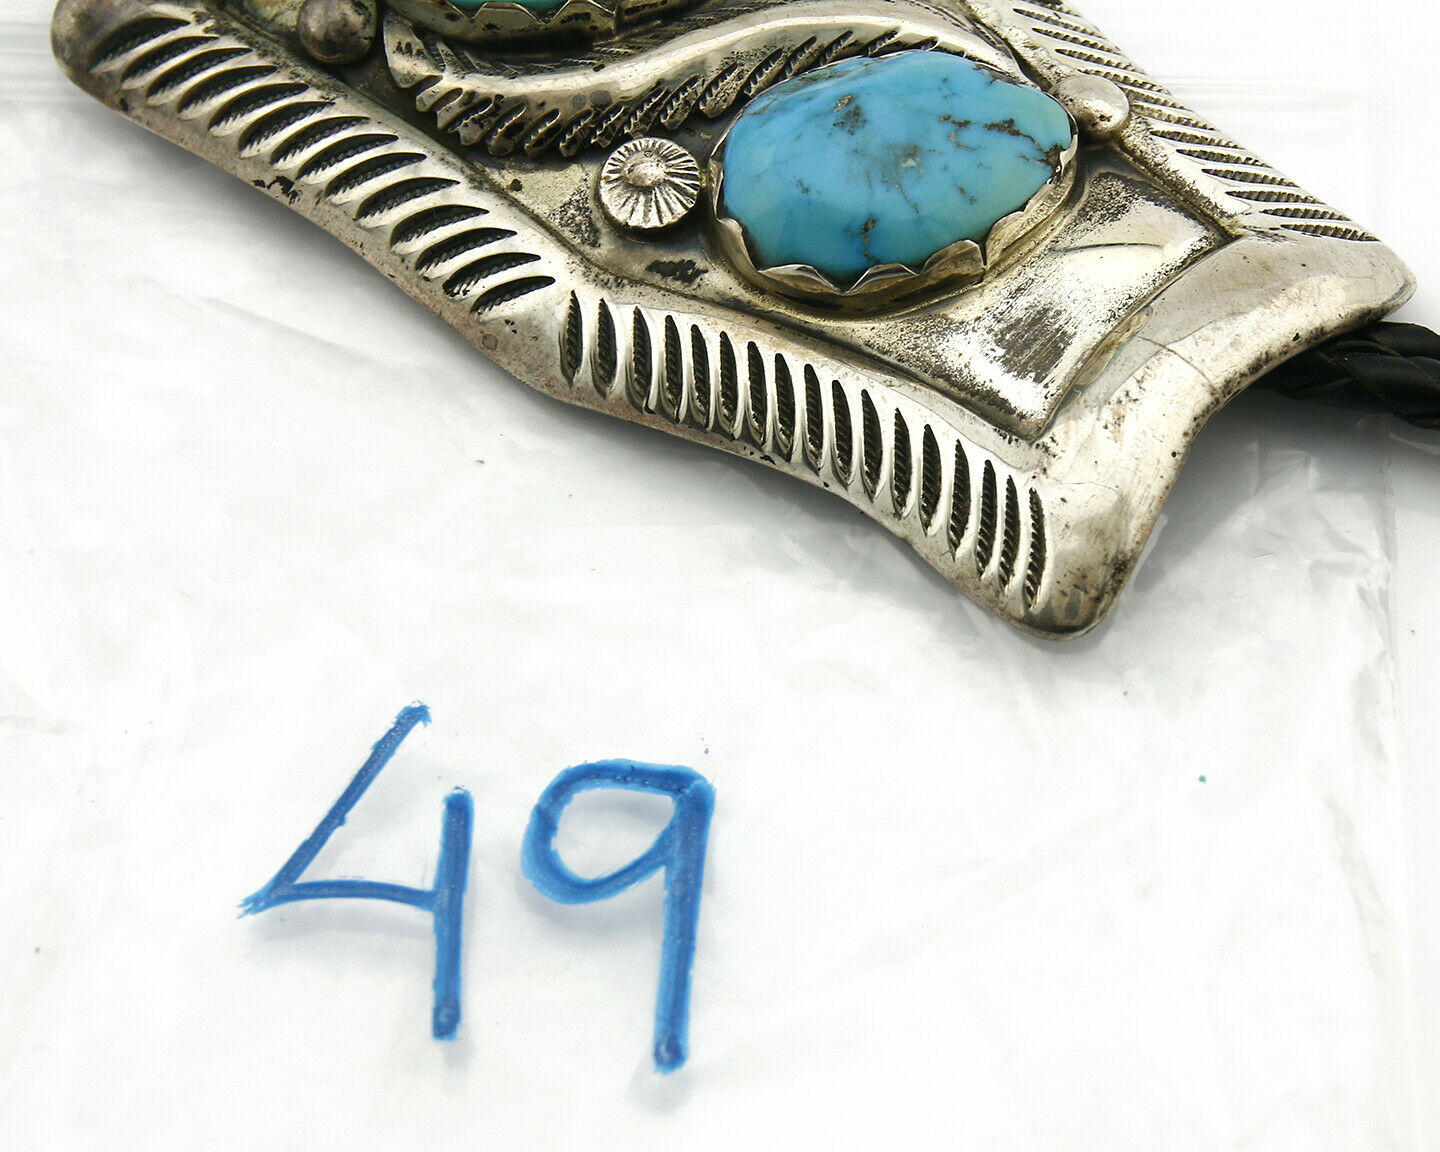 Zuni Bolo Tie .925 Silver Turquoise Artist Signed Simplicio Circa 1980's